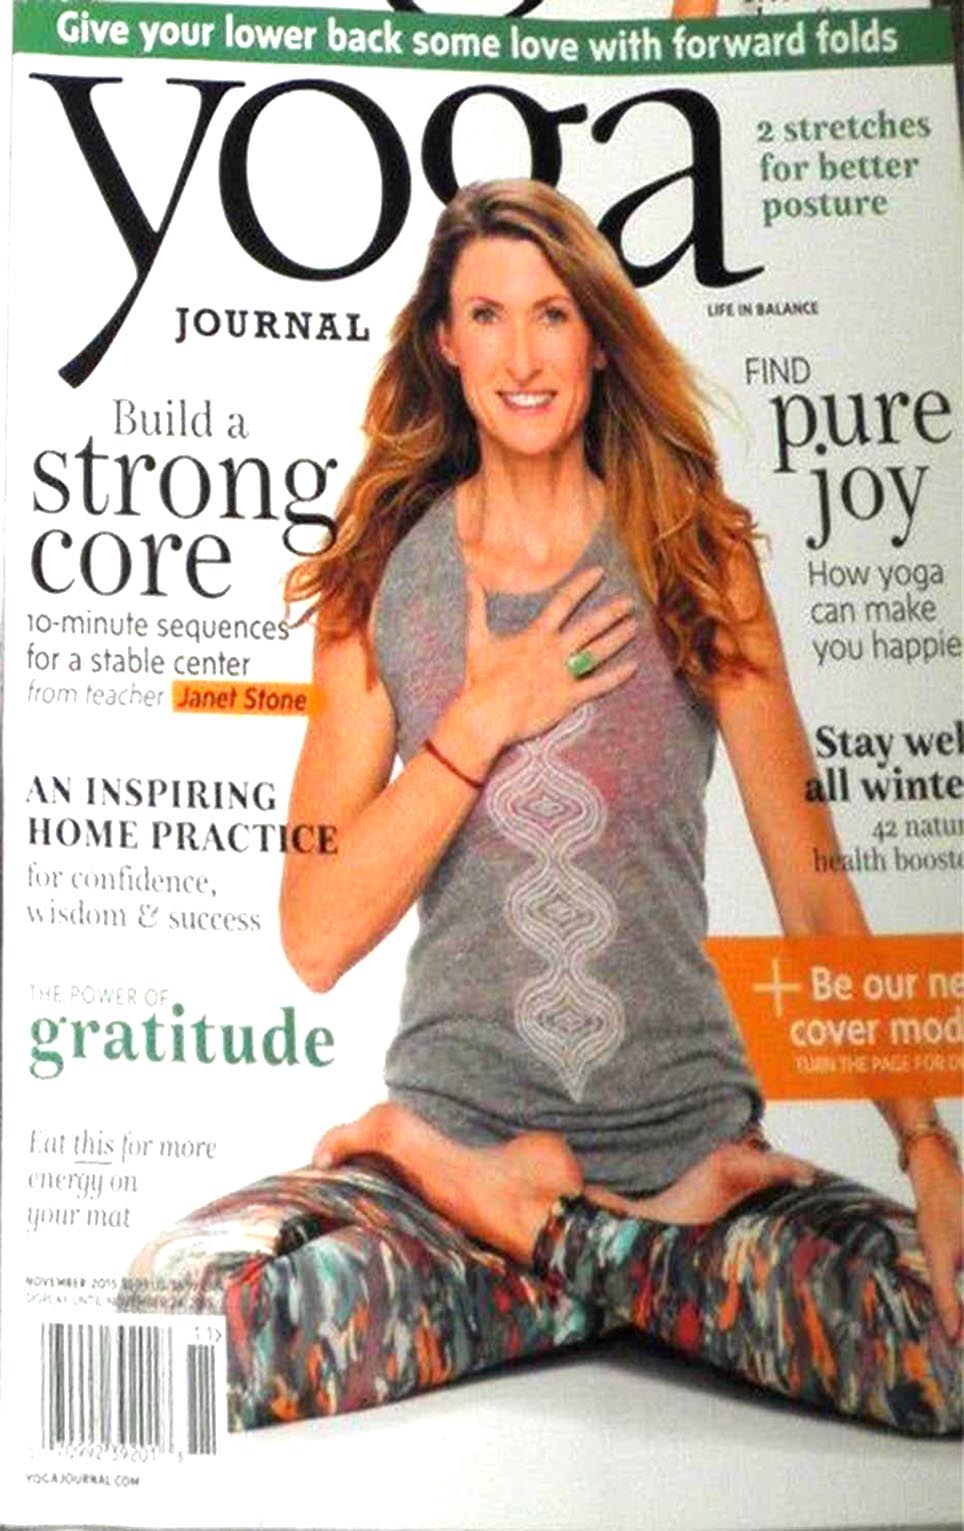 Yoga Journal November 2015 magazine back issue Yoga Journal magizine back copy 